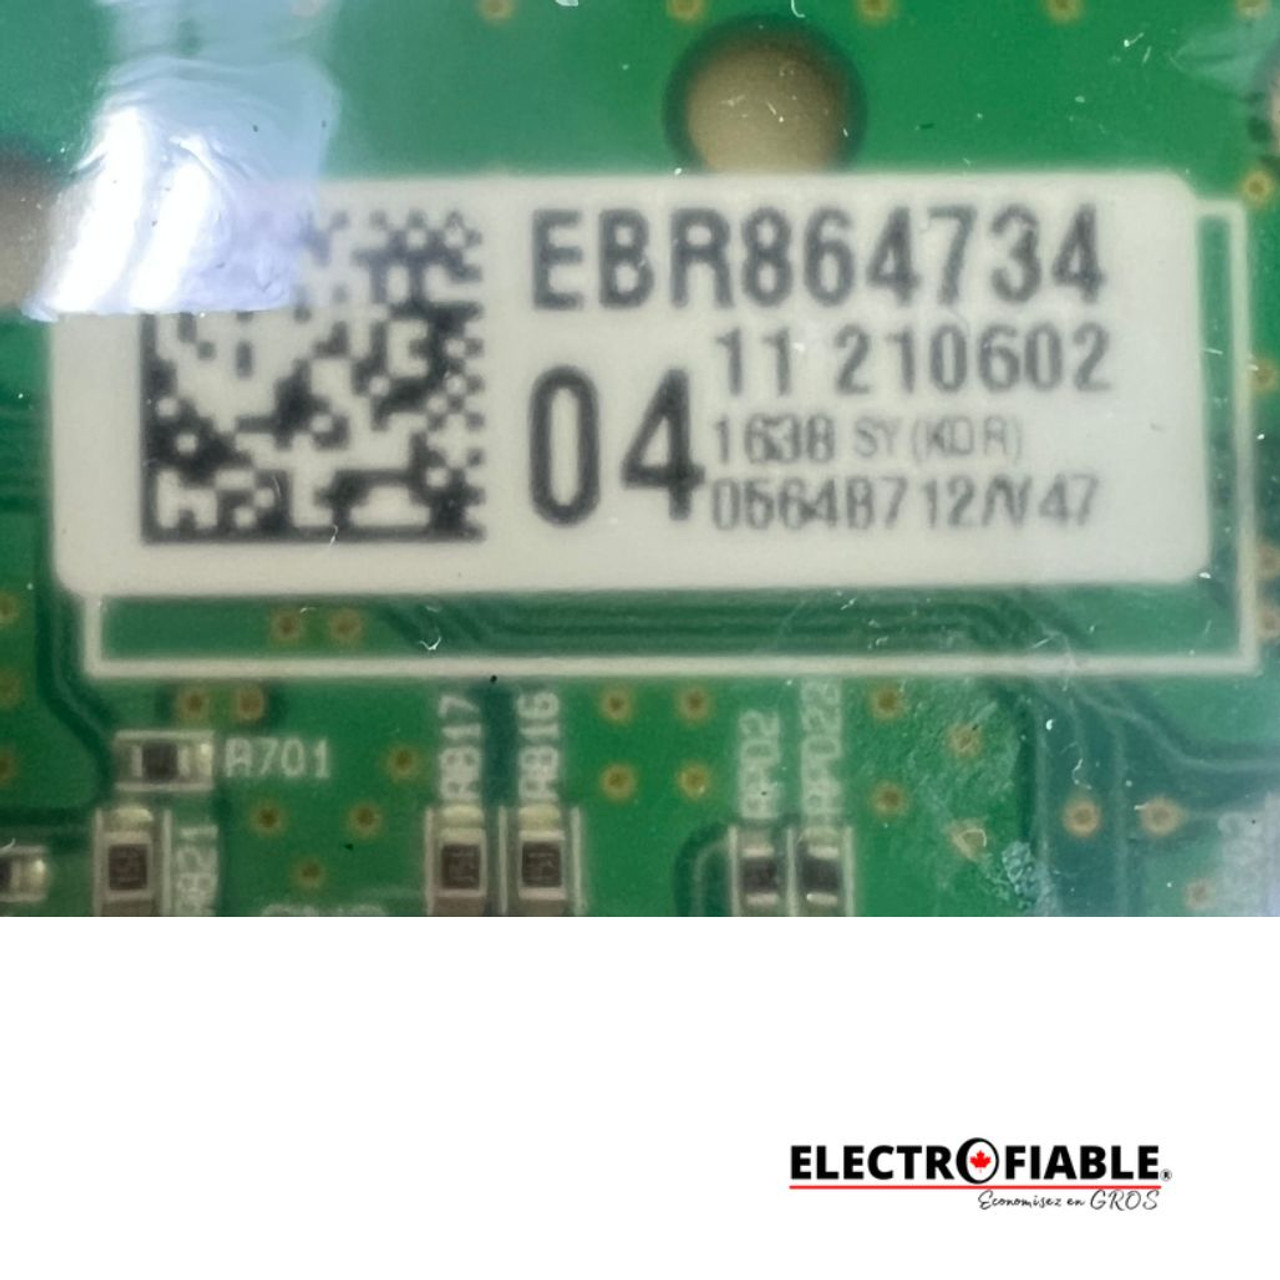 EBR86473404 Dishwasher Power LG Control Board